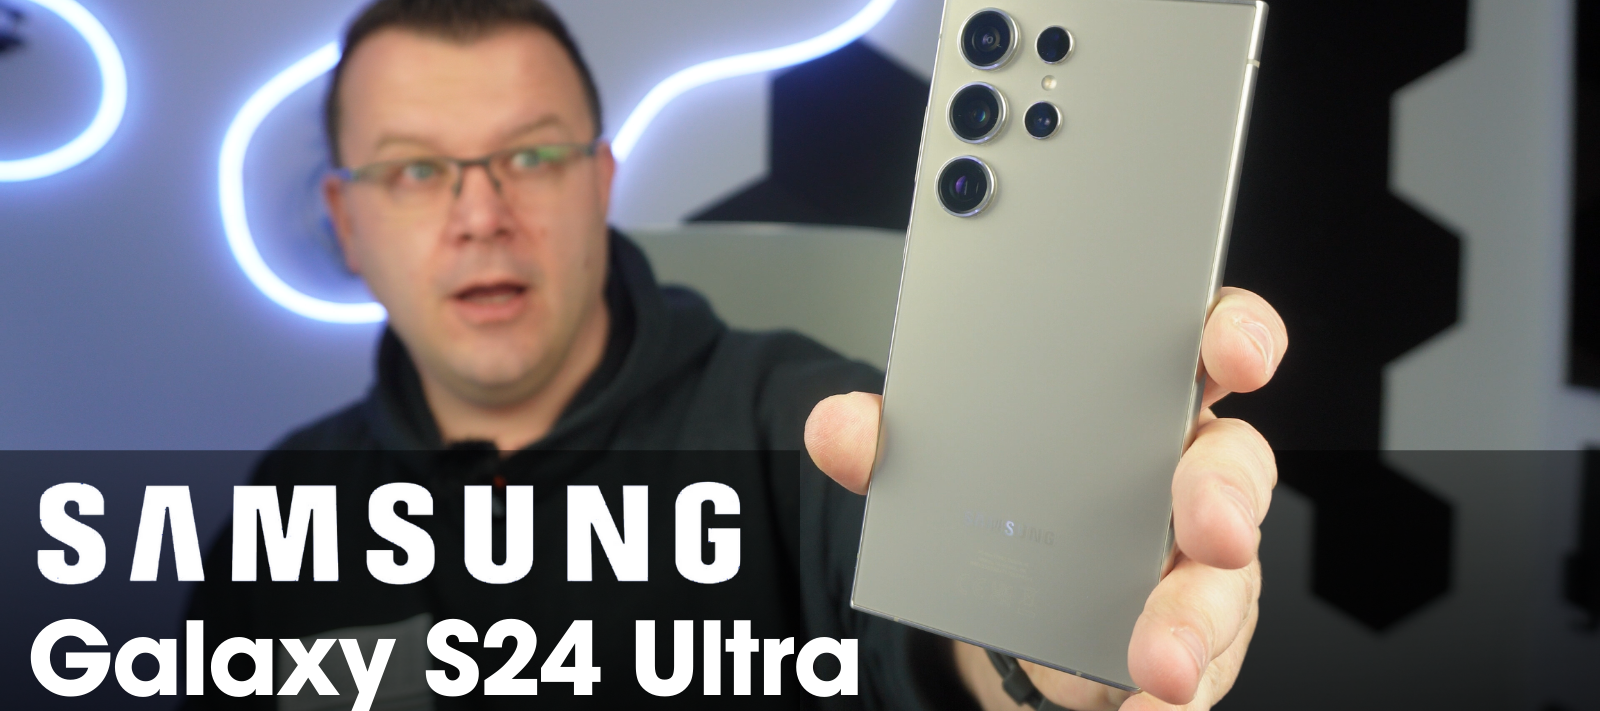 Die neue Messlatte: Samsung Galaxy S24 Ultra im Test! Kamera, Specs & mein Fazit